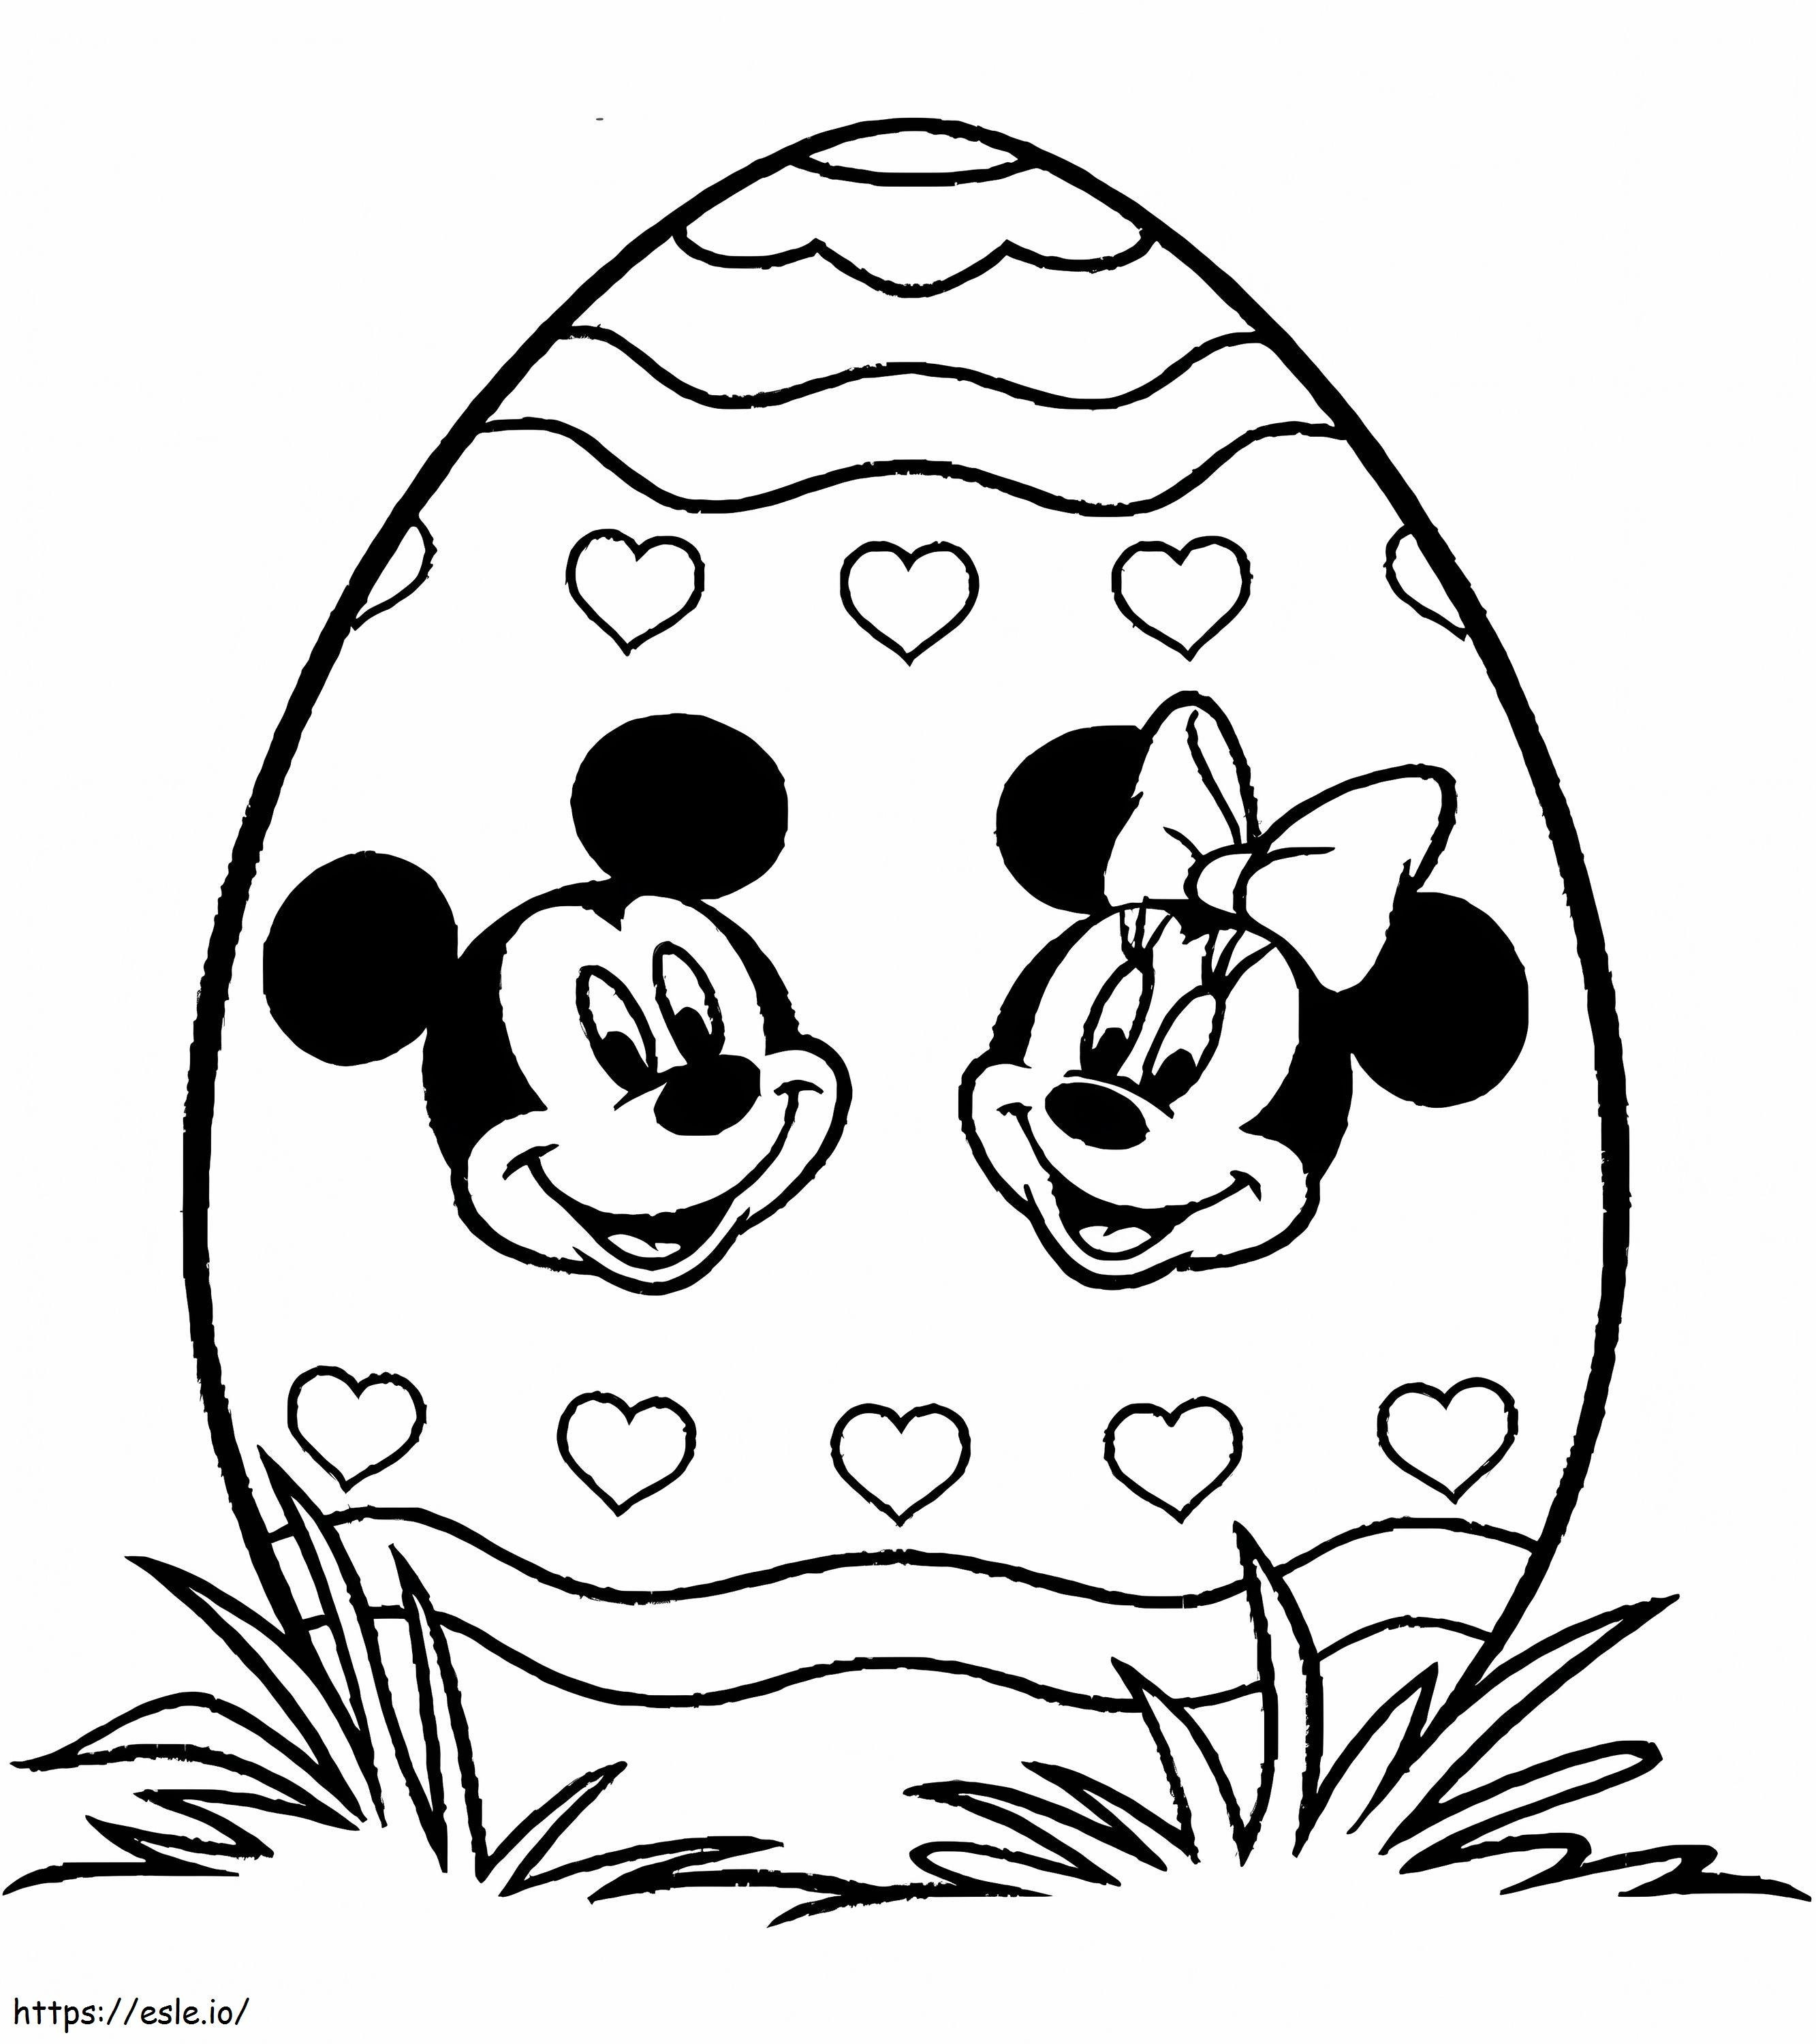 Bedruckte Ostereier mit Mickey Mouse und Minnie Mouse ausmalbilder